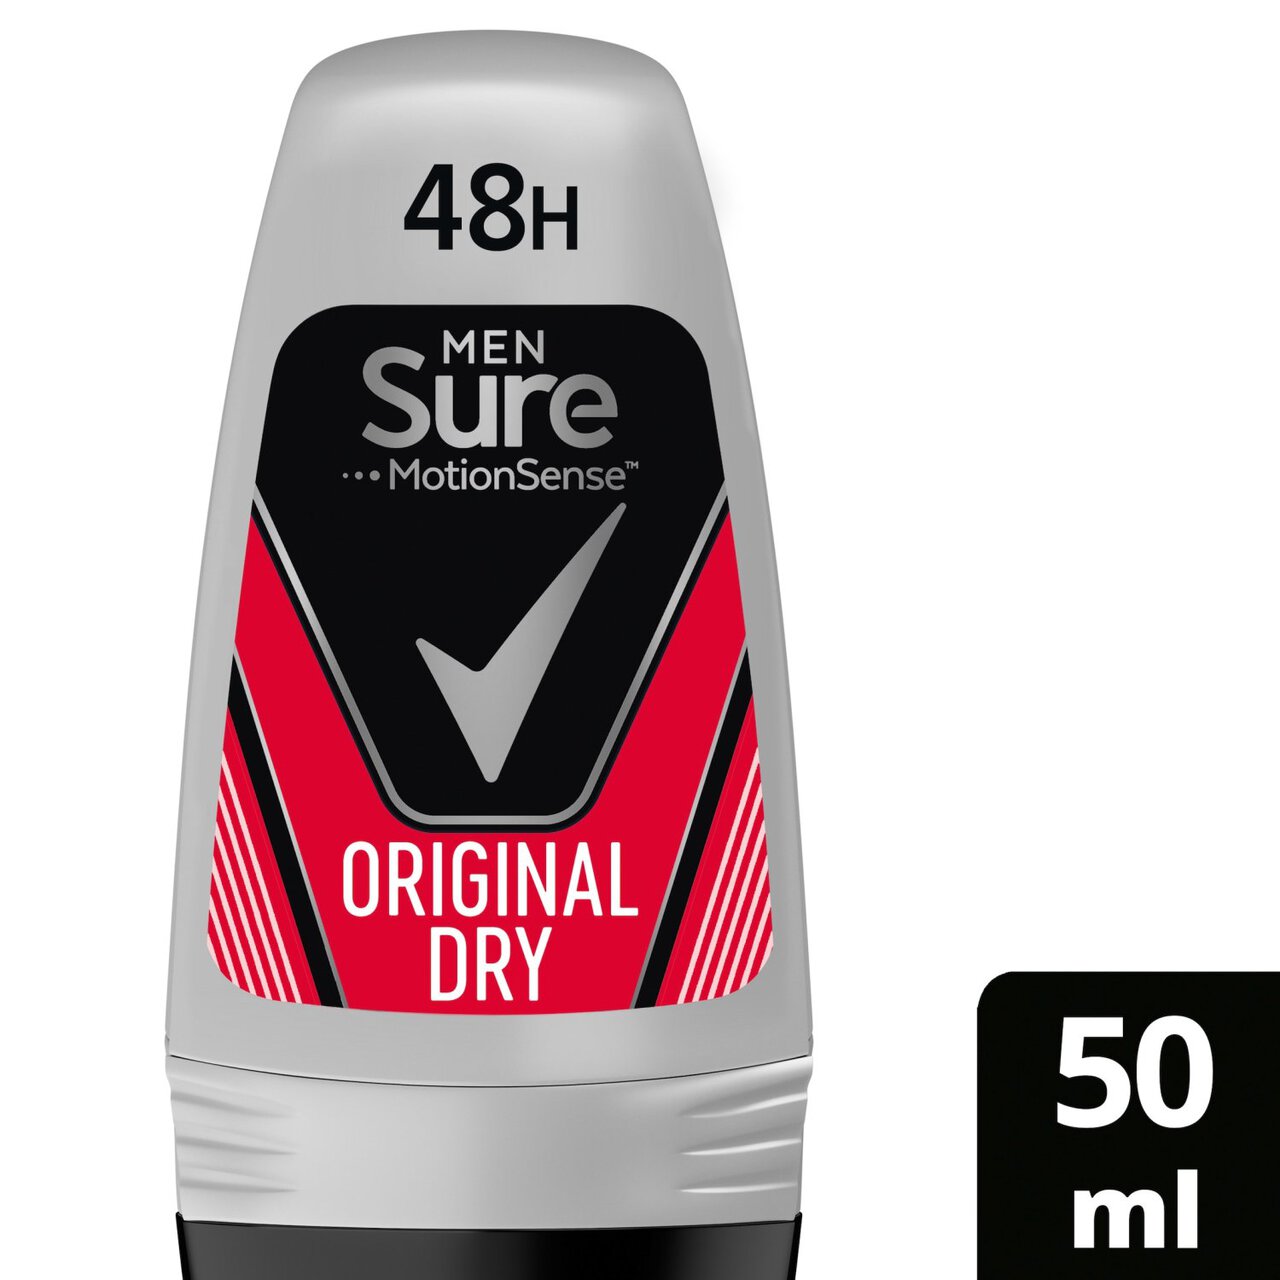 Sure Men Original Roll-On Anti-Perspirant Deodorant 50ml